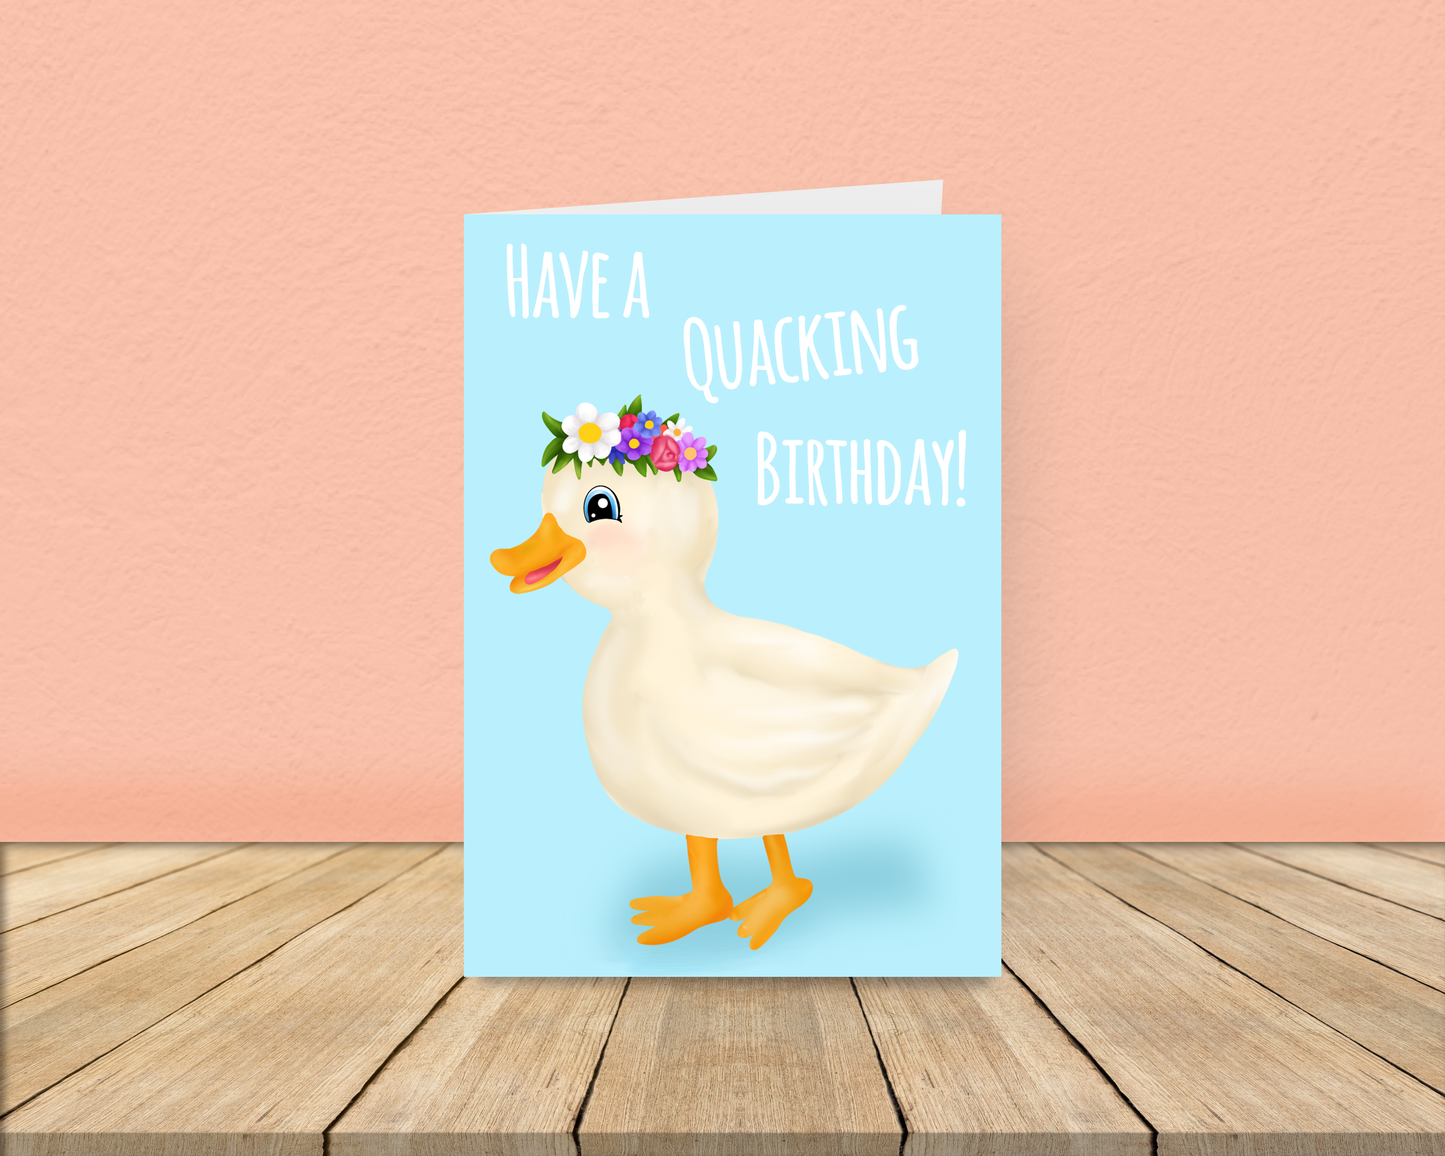 Quacking Birthday!